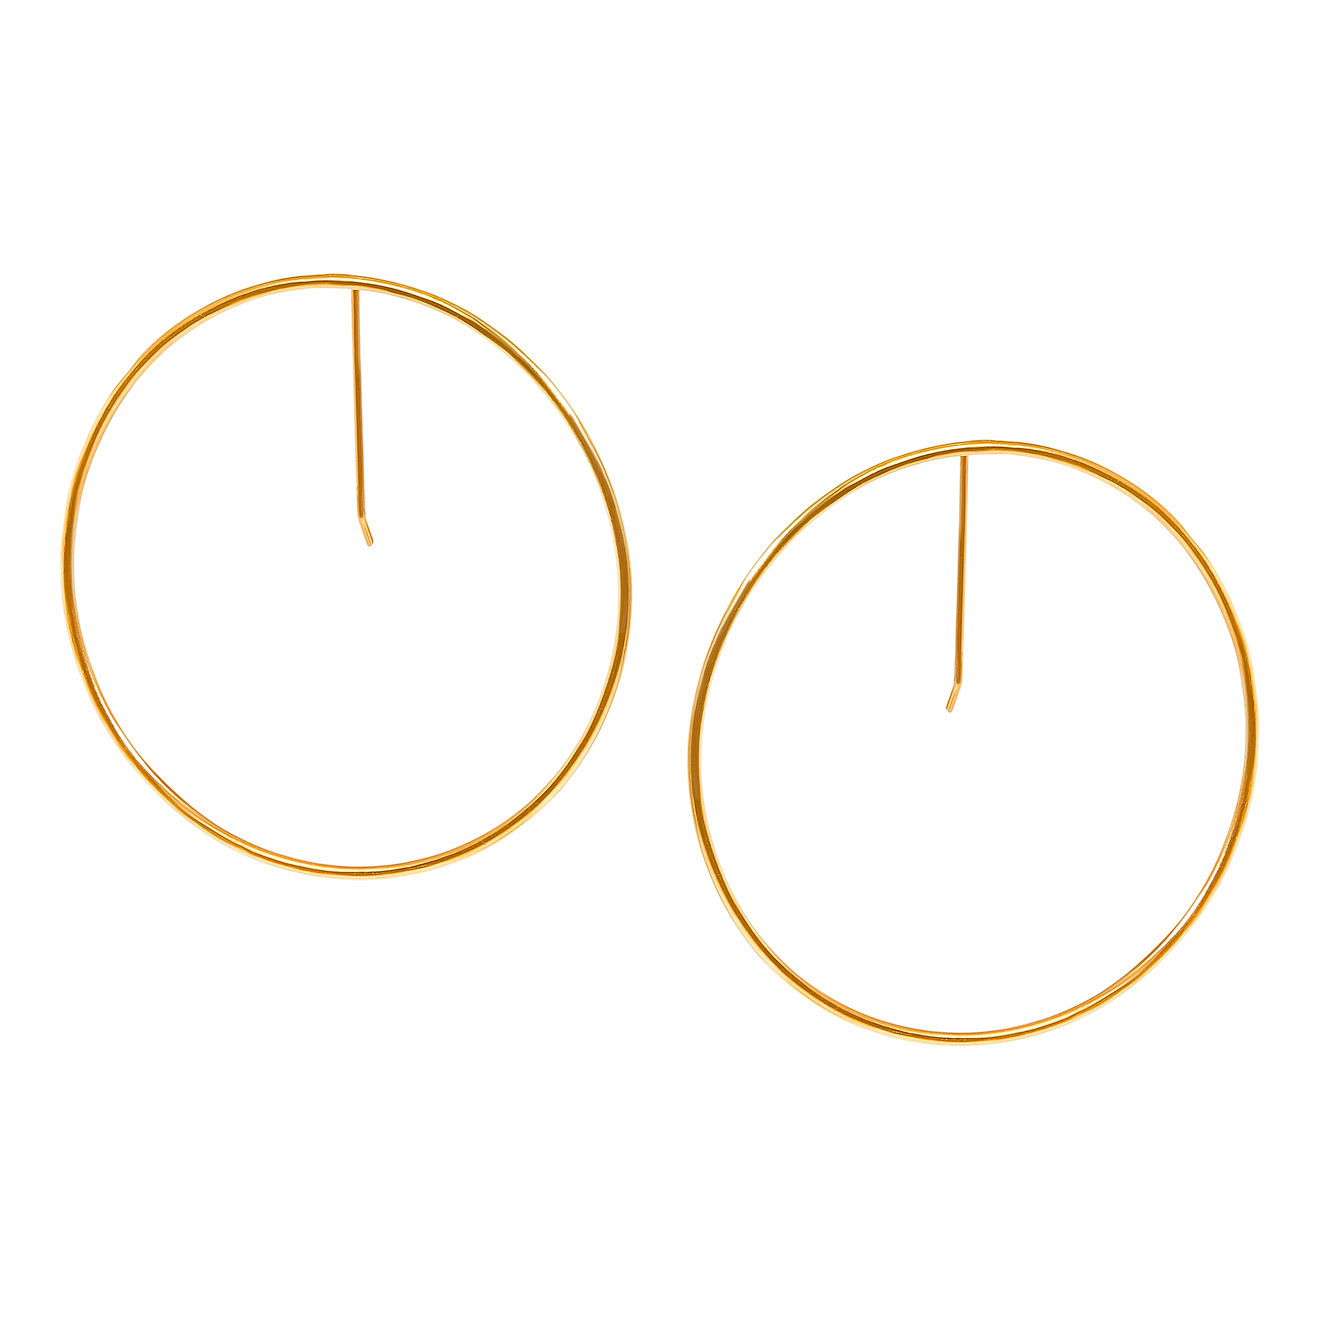 Khoshtrik Большие позолоченные серьги-круги khoshtrik позолоченные серьги круги